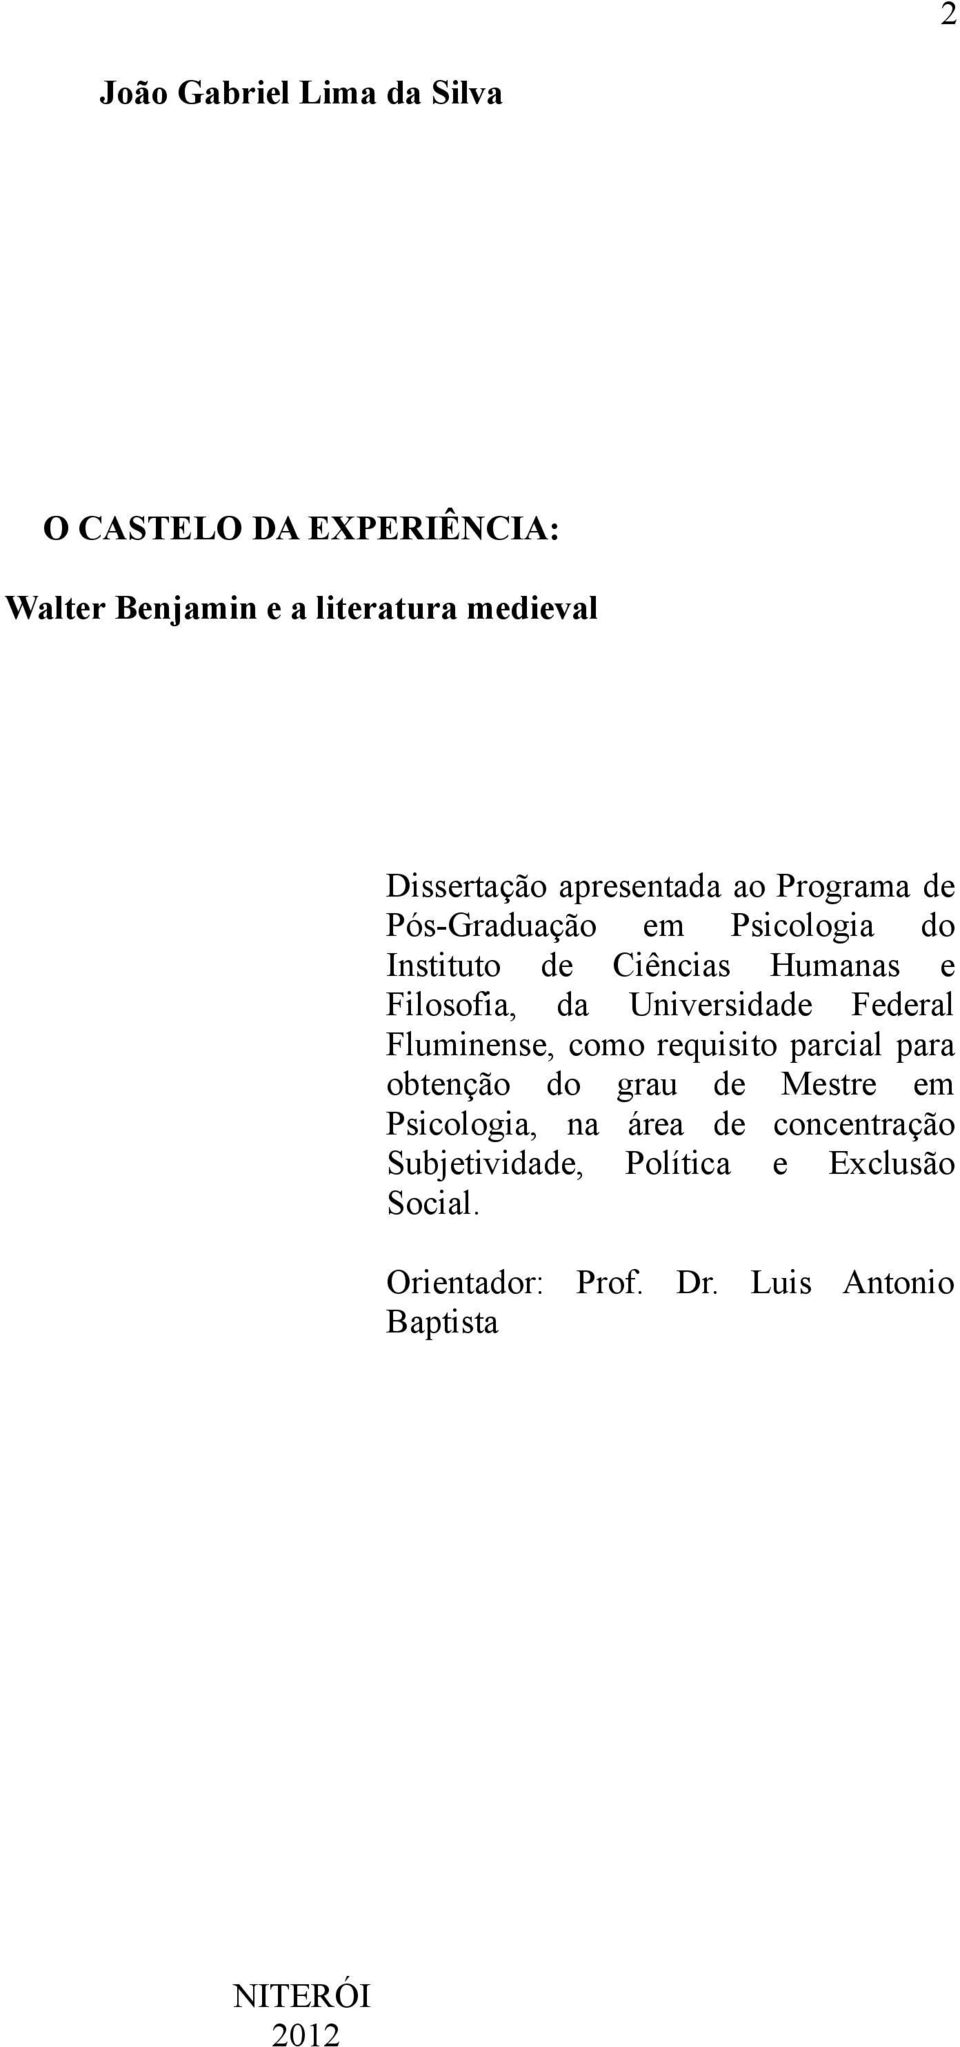 Universidade Federal Fluminense, como requisito parcial para obtenção do grau de Mestre em Psicologia, na